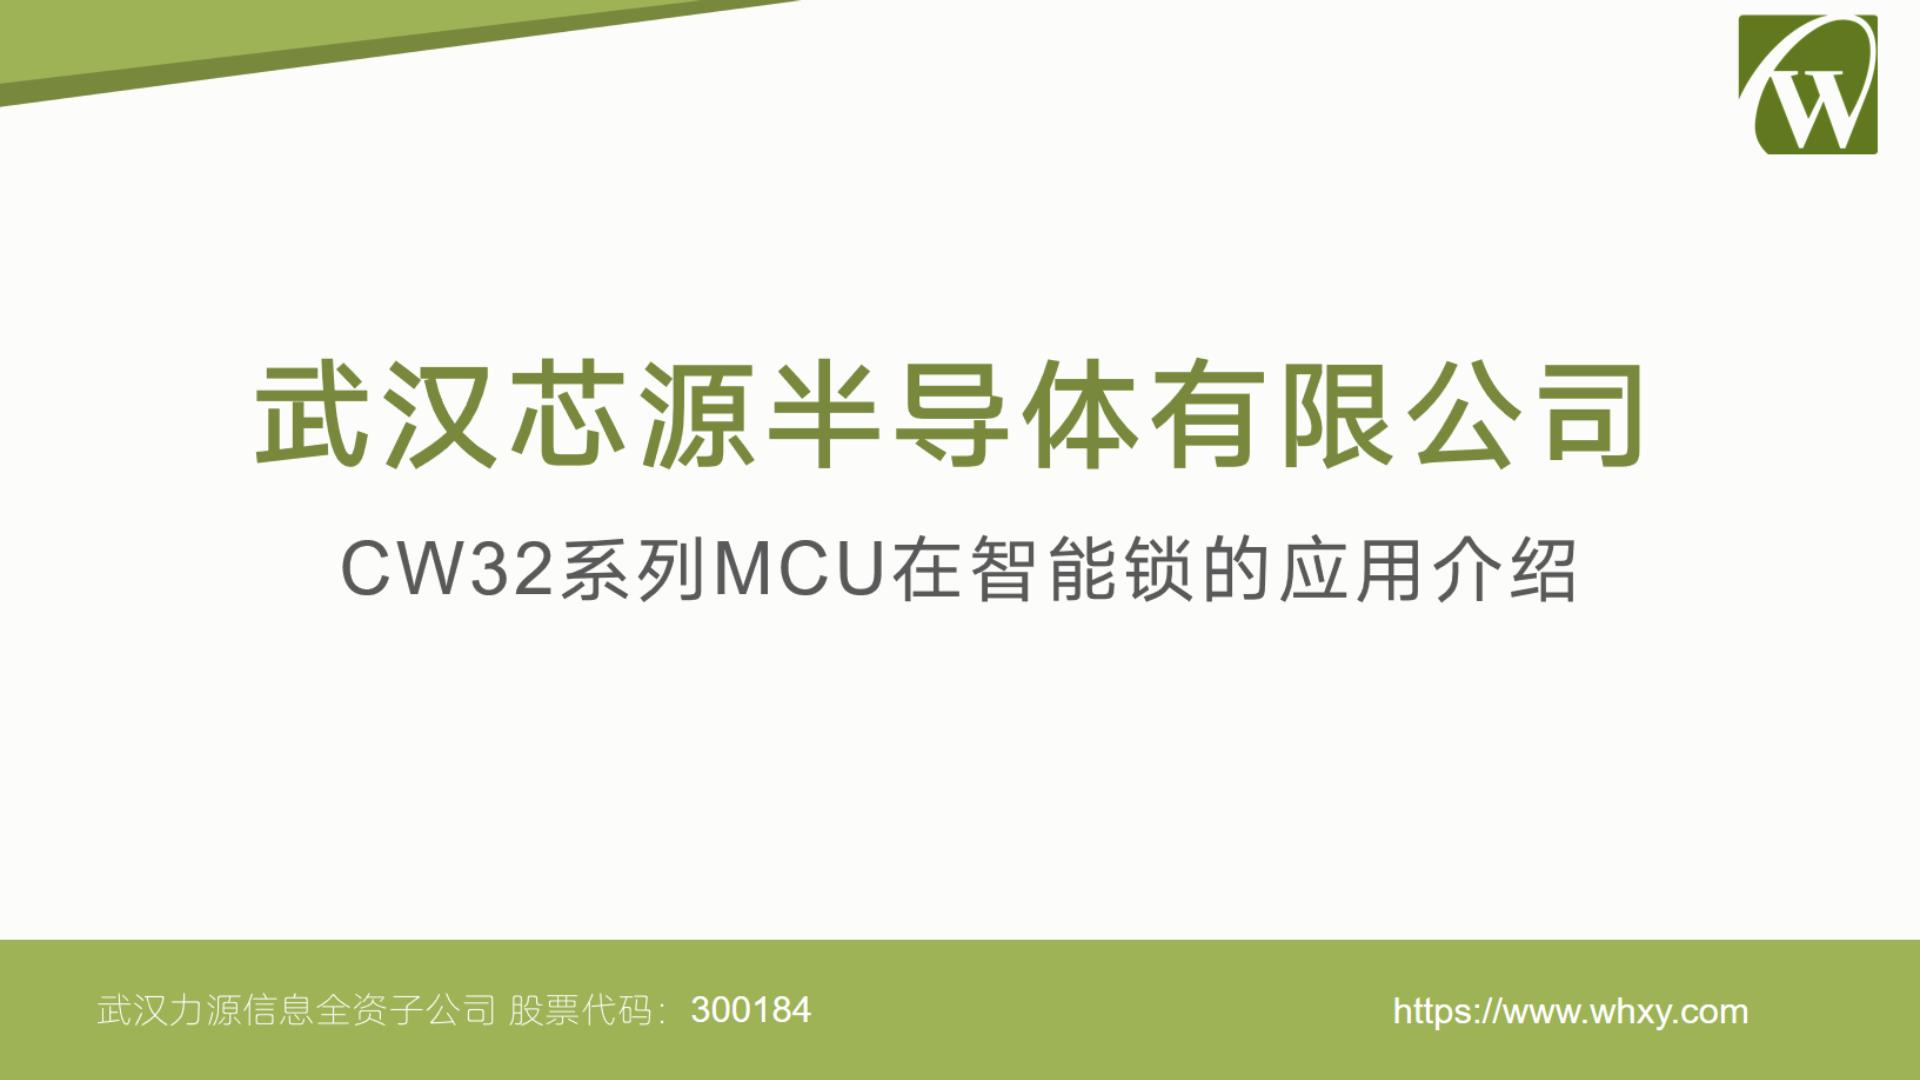 武漢芯源半導體CW32系列MCU在智能鎖的應用介紹 #MCU #嵌入式開發 #微控制器 #智能鎖 